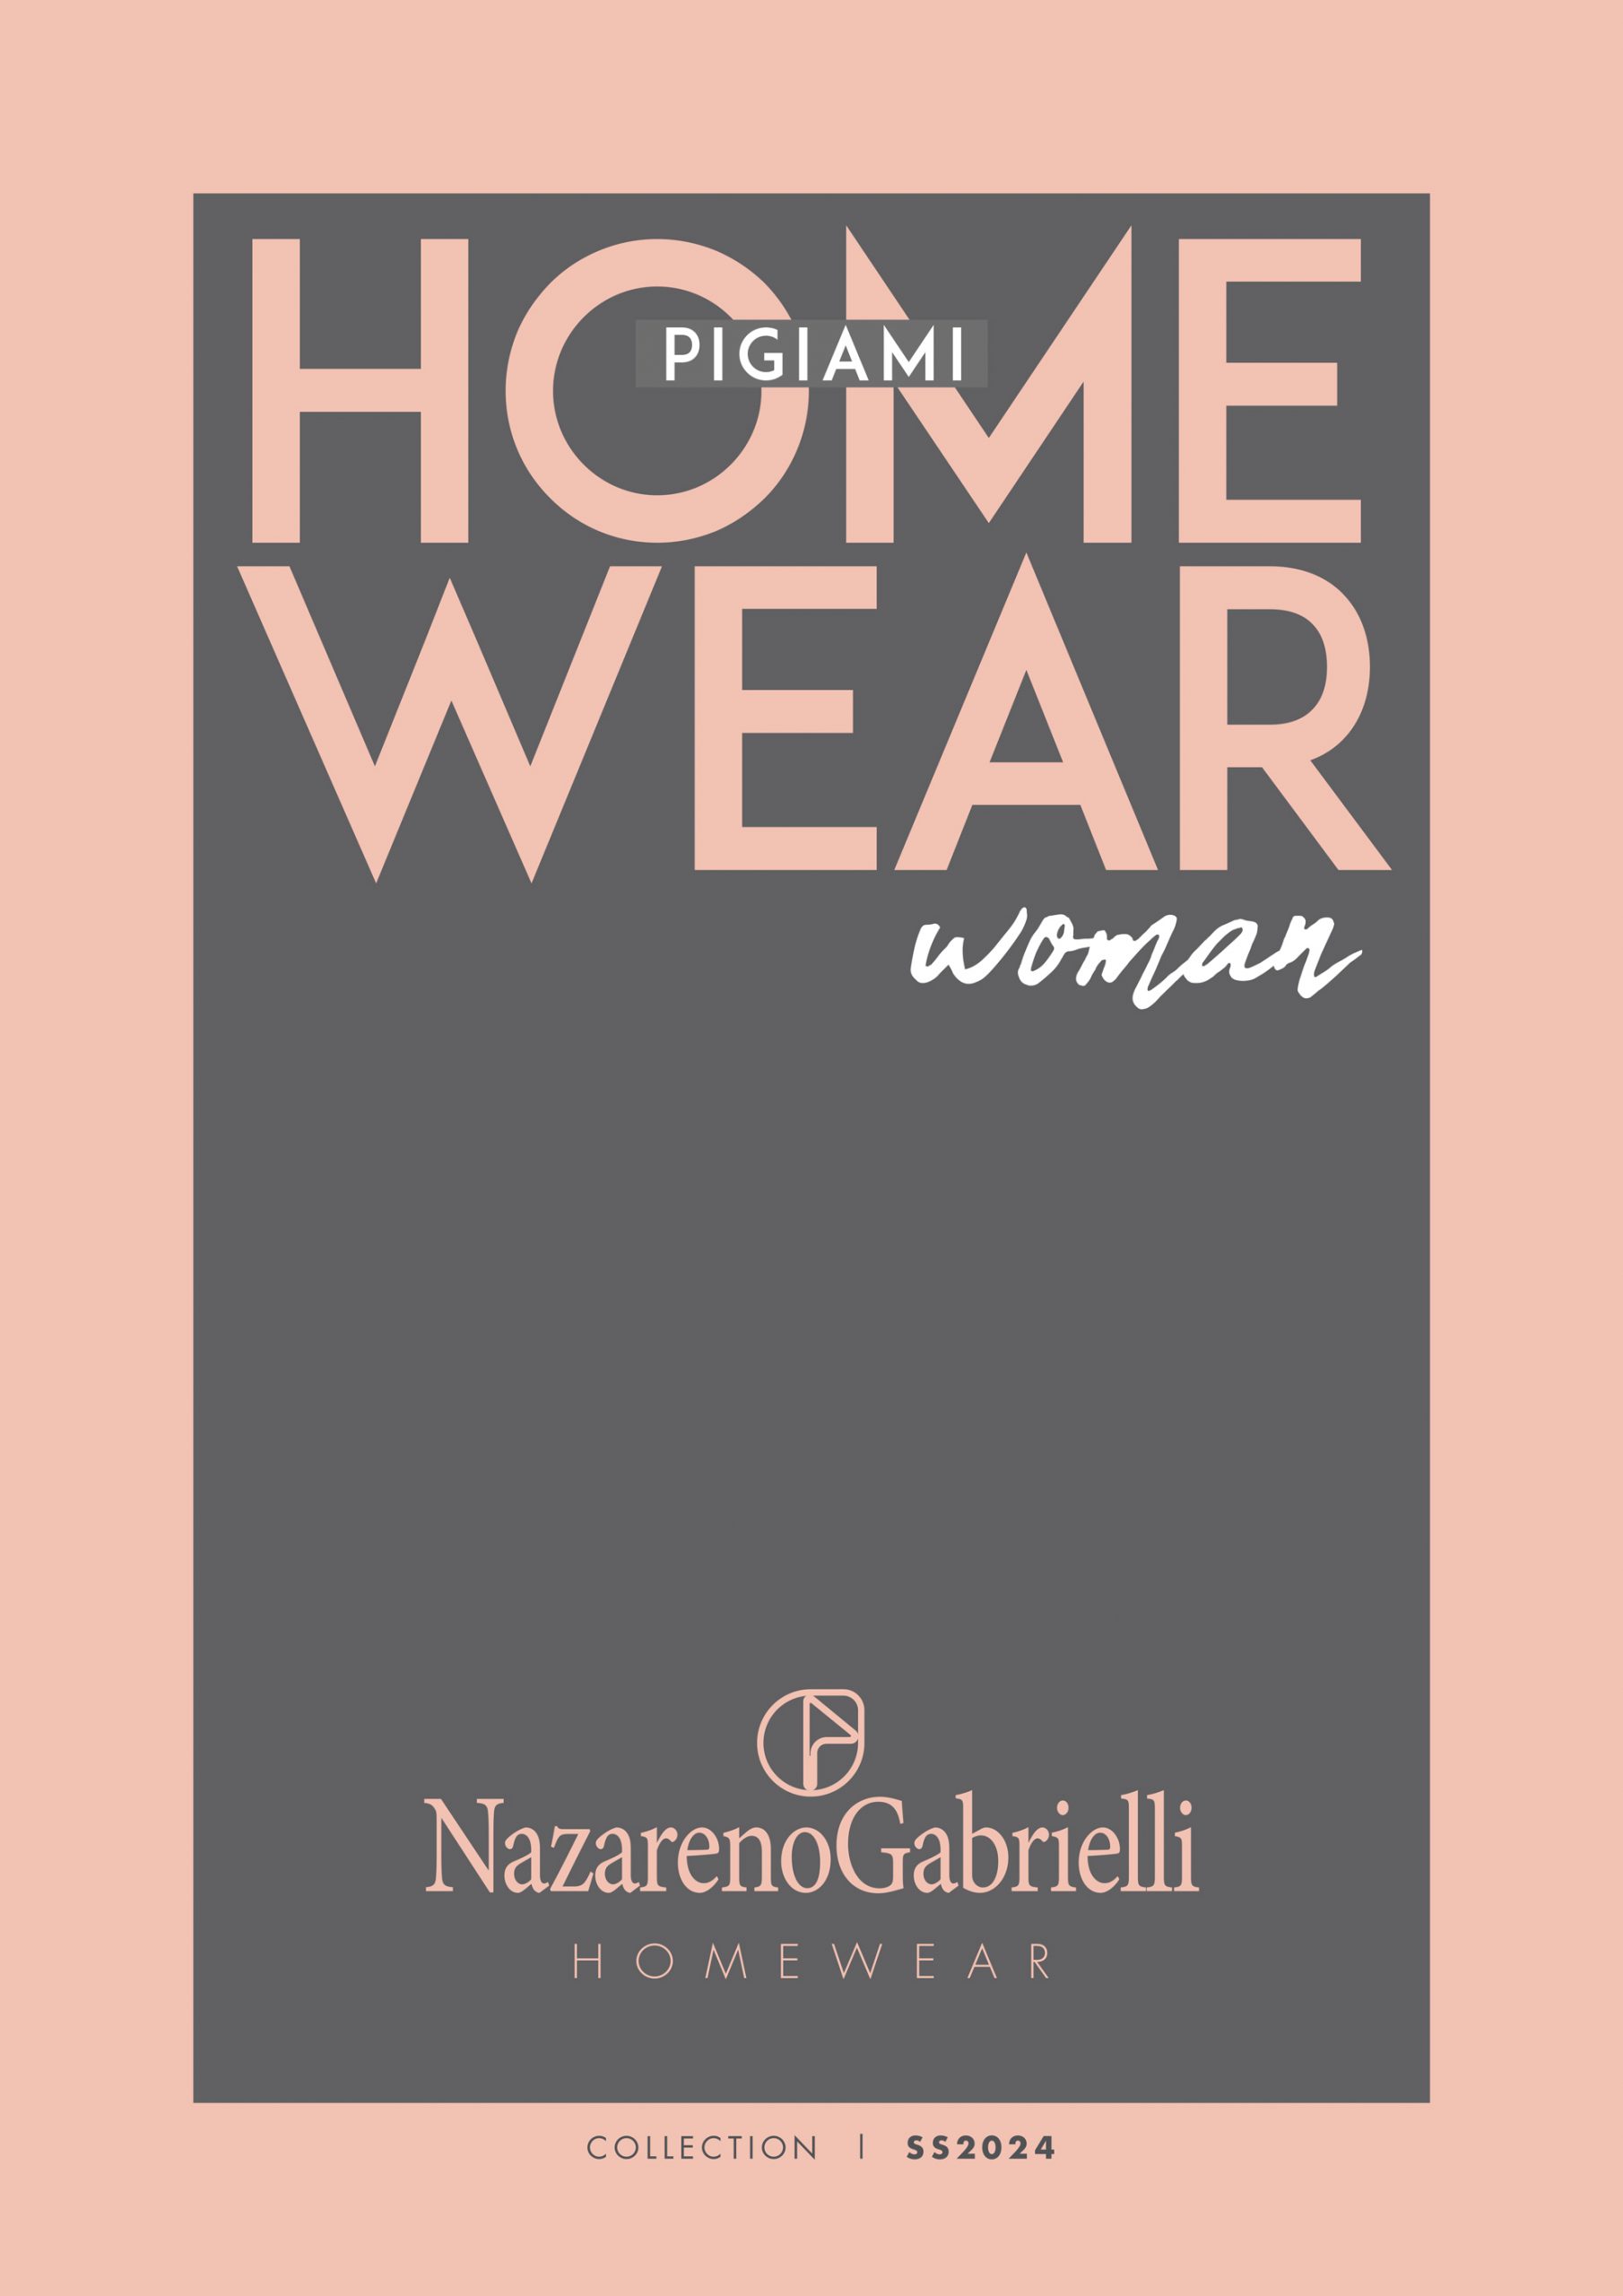 NAZARENO-cat-pigiami-woman-ss24